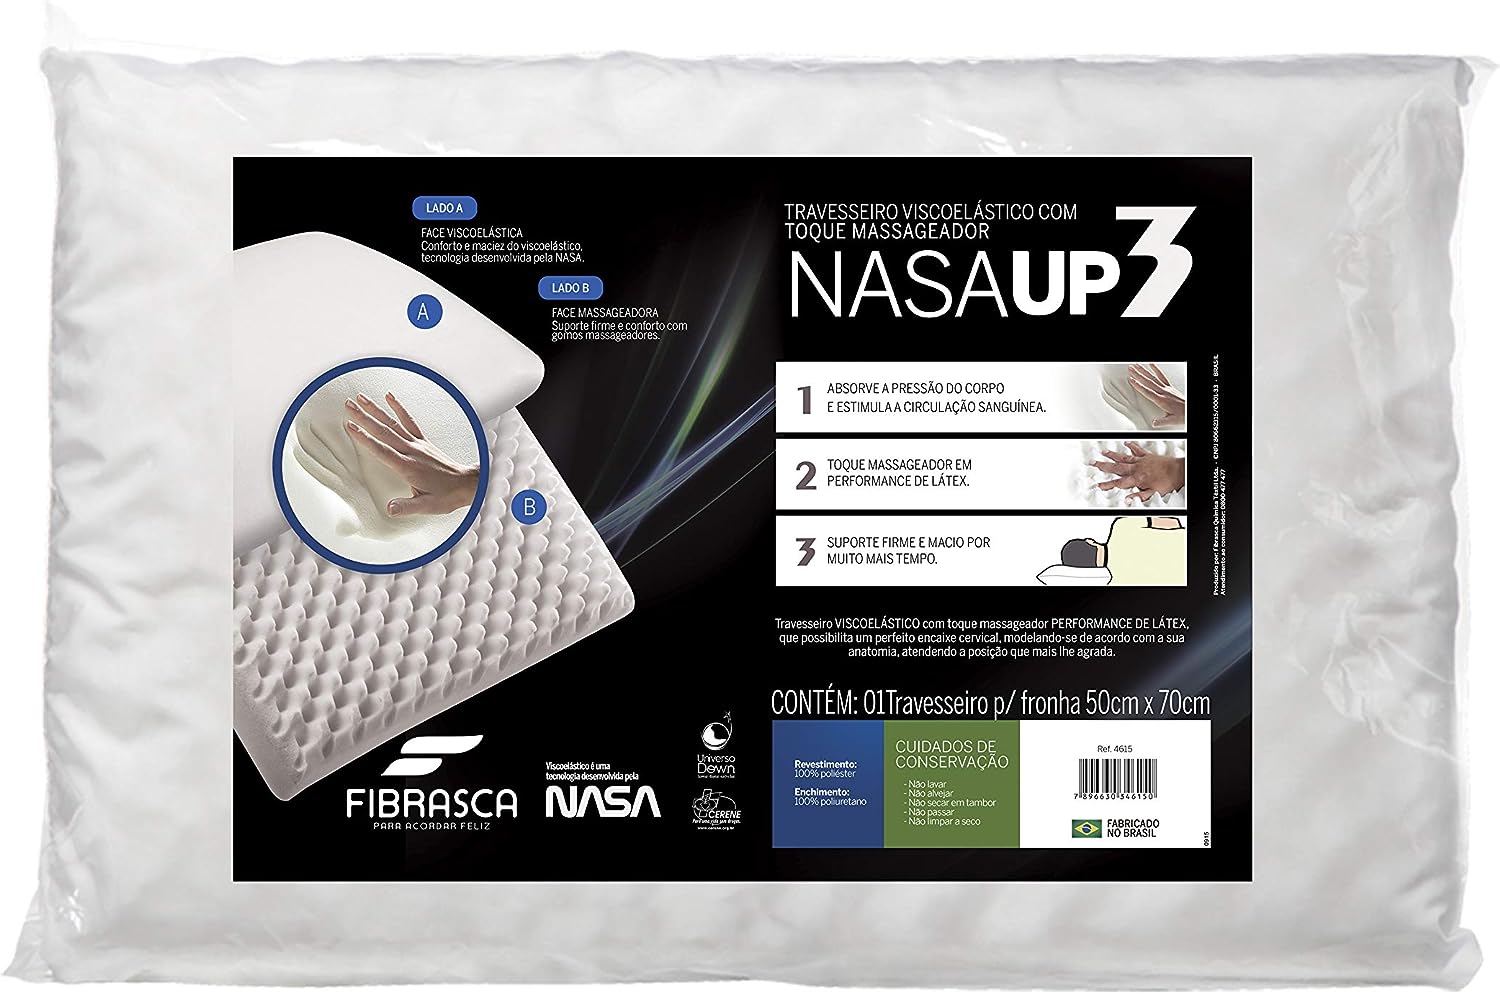 Com a tecnologia avançada da NASA, sua espuma de suporte alto se adapta aos contornos do corpo, proporcionando alívio da pressão e uma postura correta durante o sono.